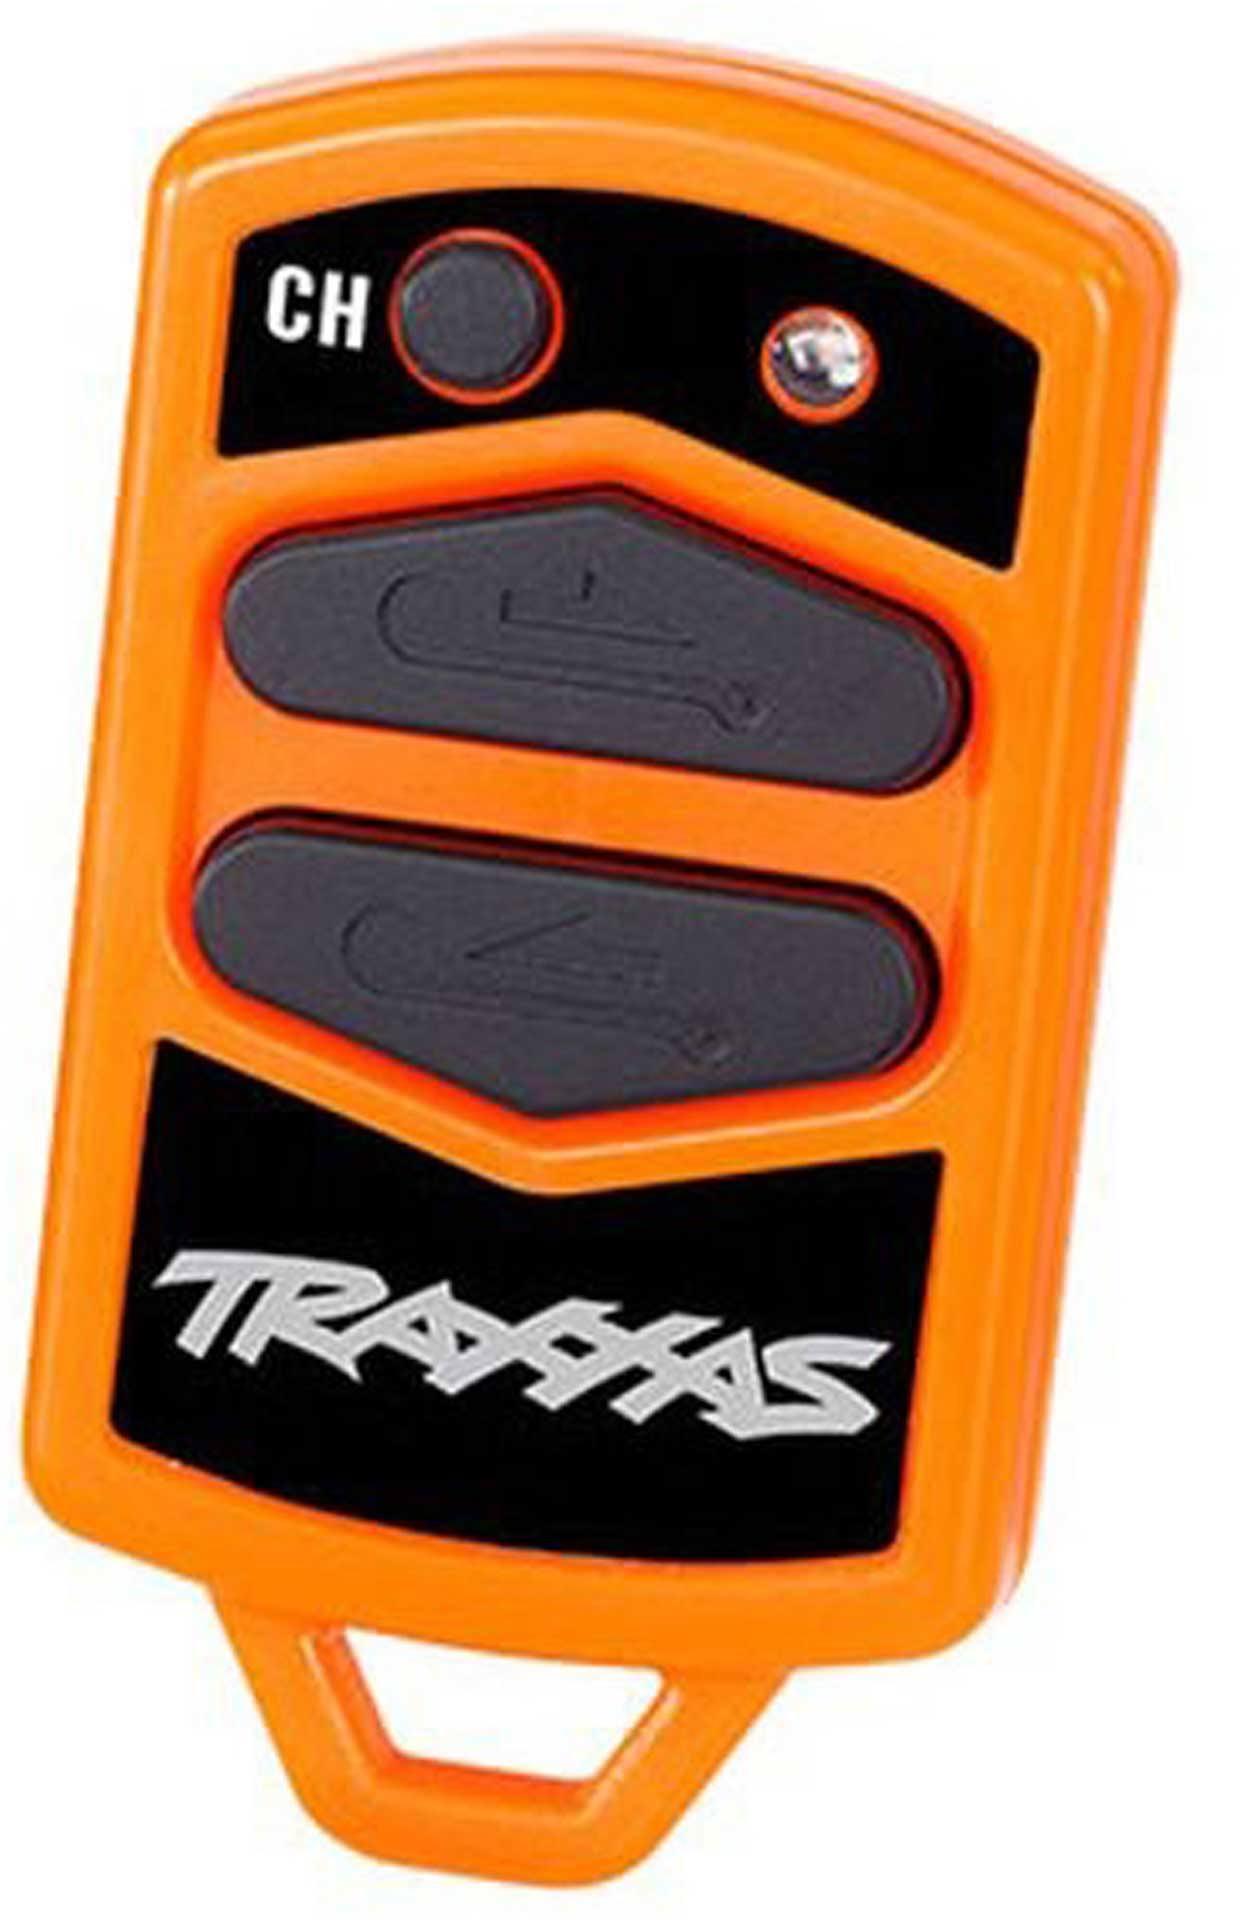 Traxxas TRX8857 Winch Remote Control TRX-4